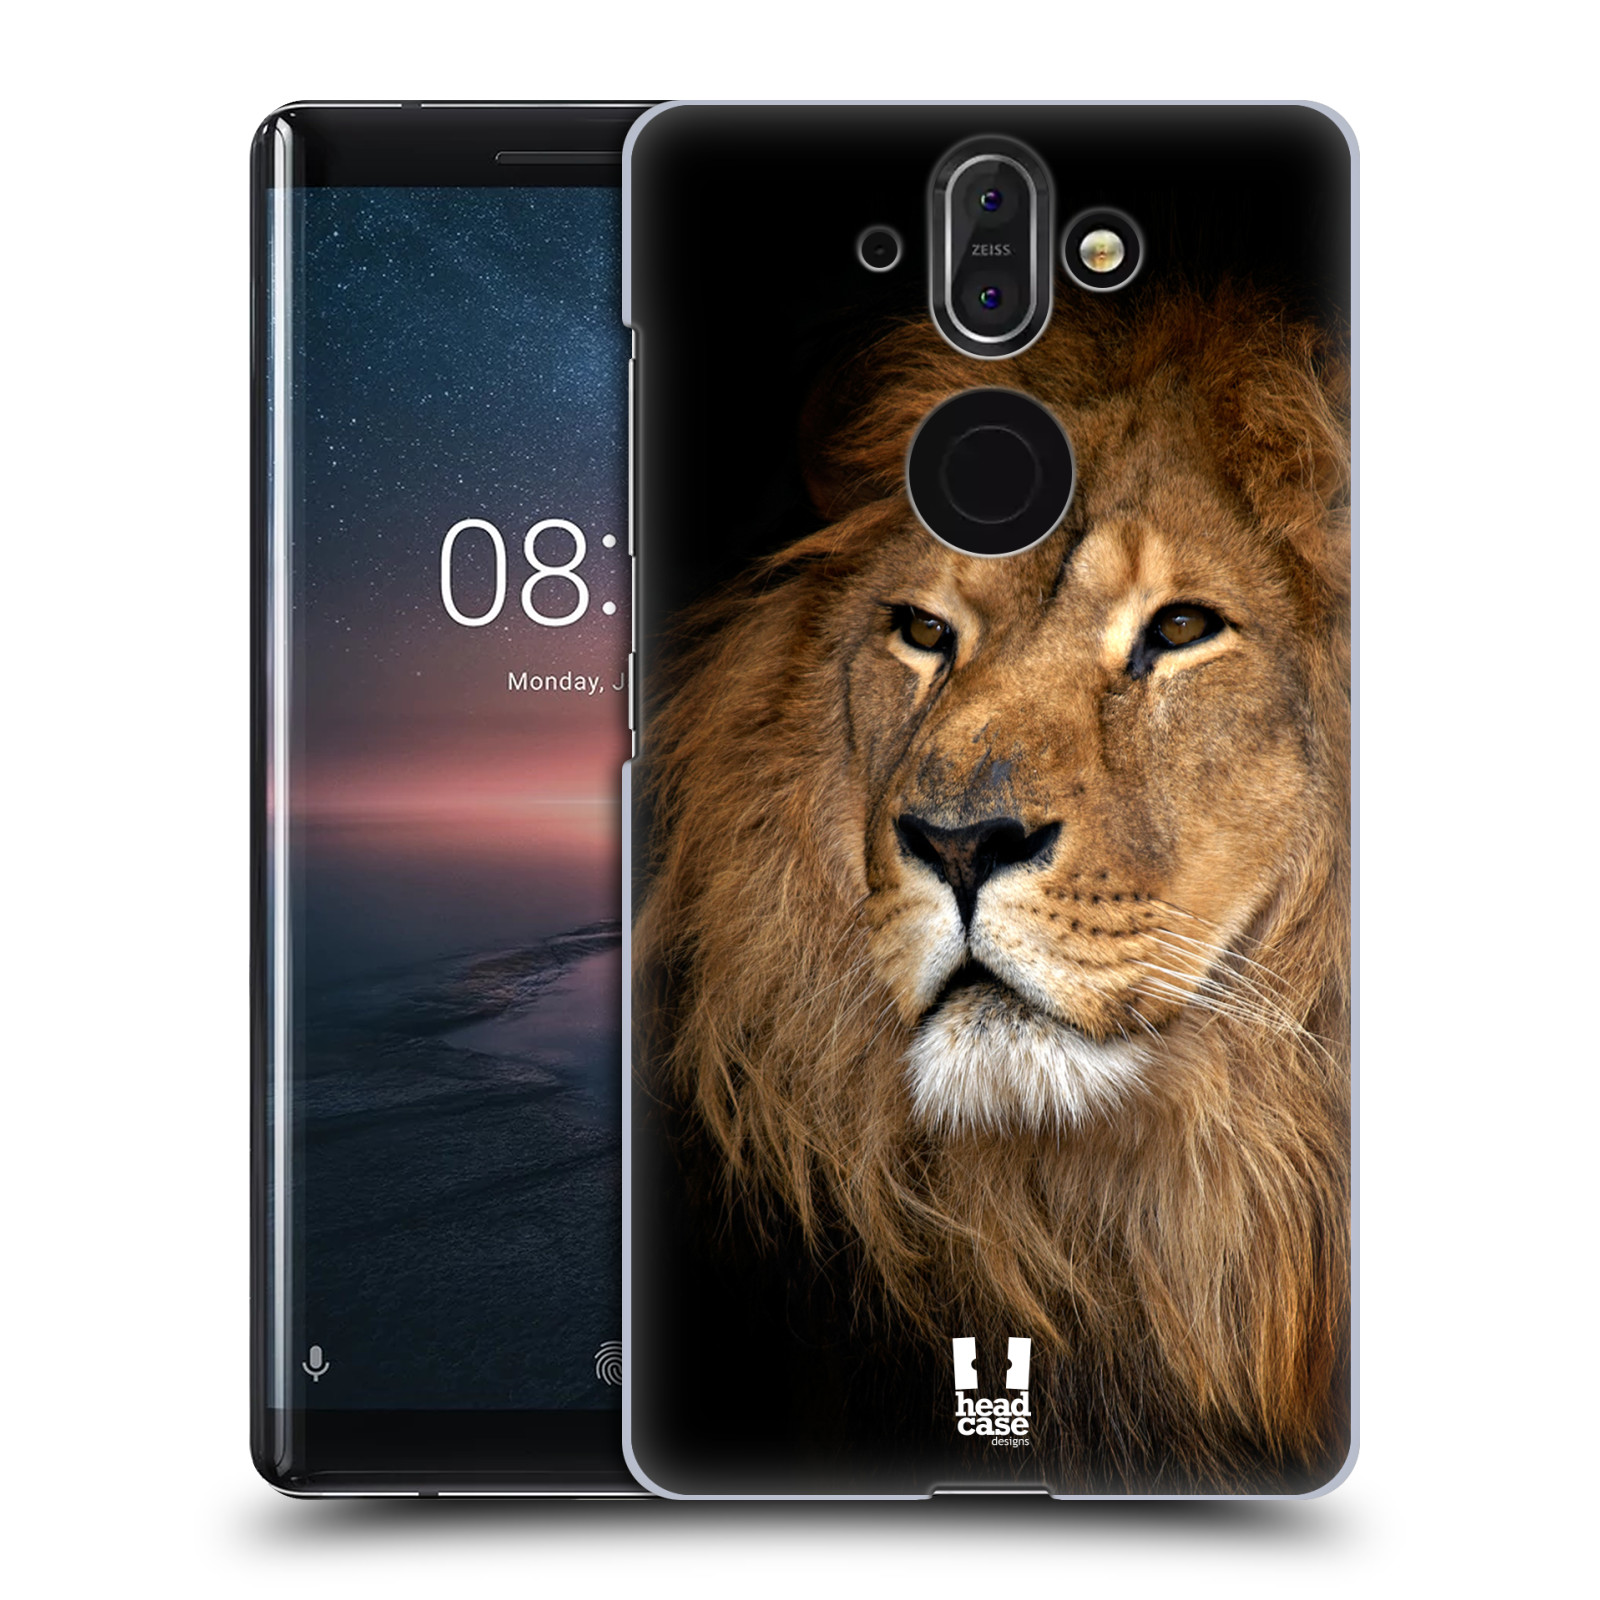 Zadní obal pro mobil Nokia 8 Sirocco - HEAD CASE - Svět zvířat král zvířat Lev